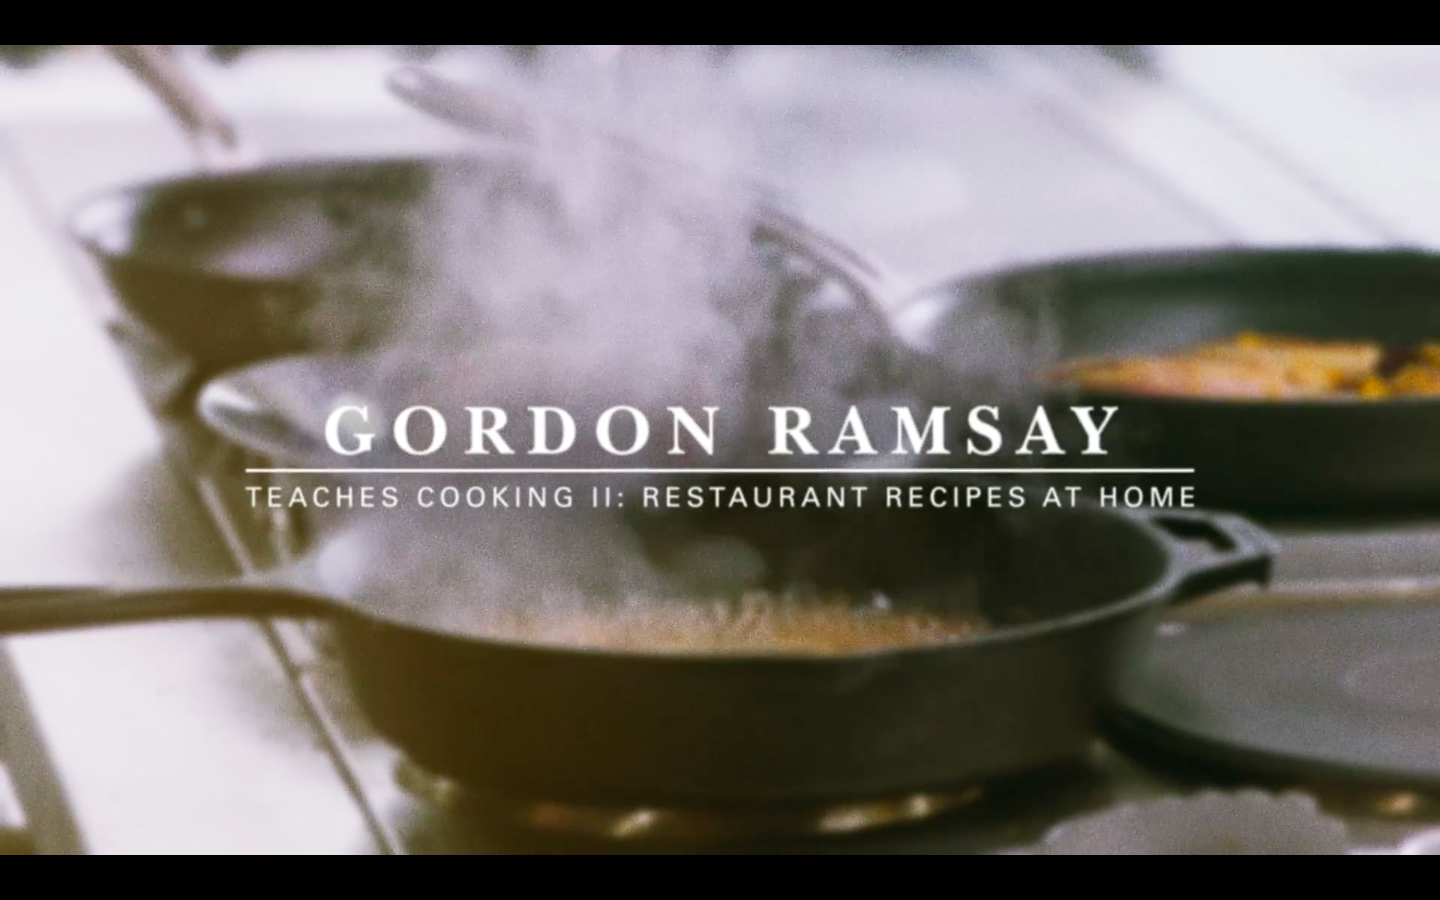 gordon ramsay teaches cooking masterclass free